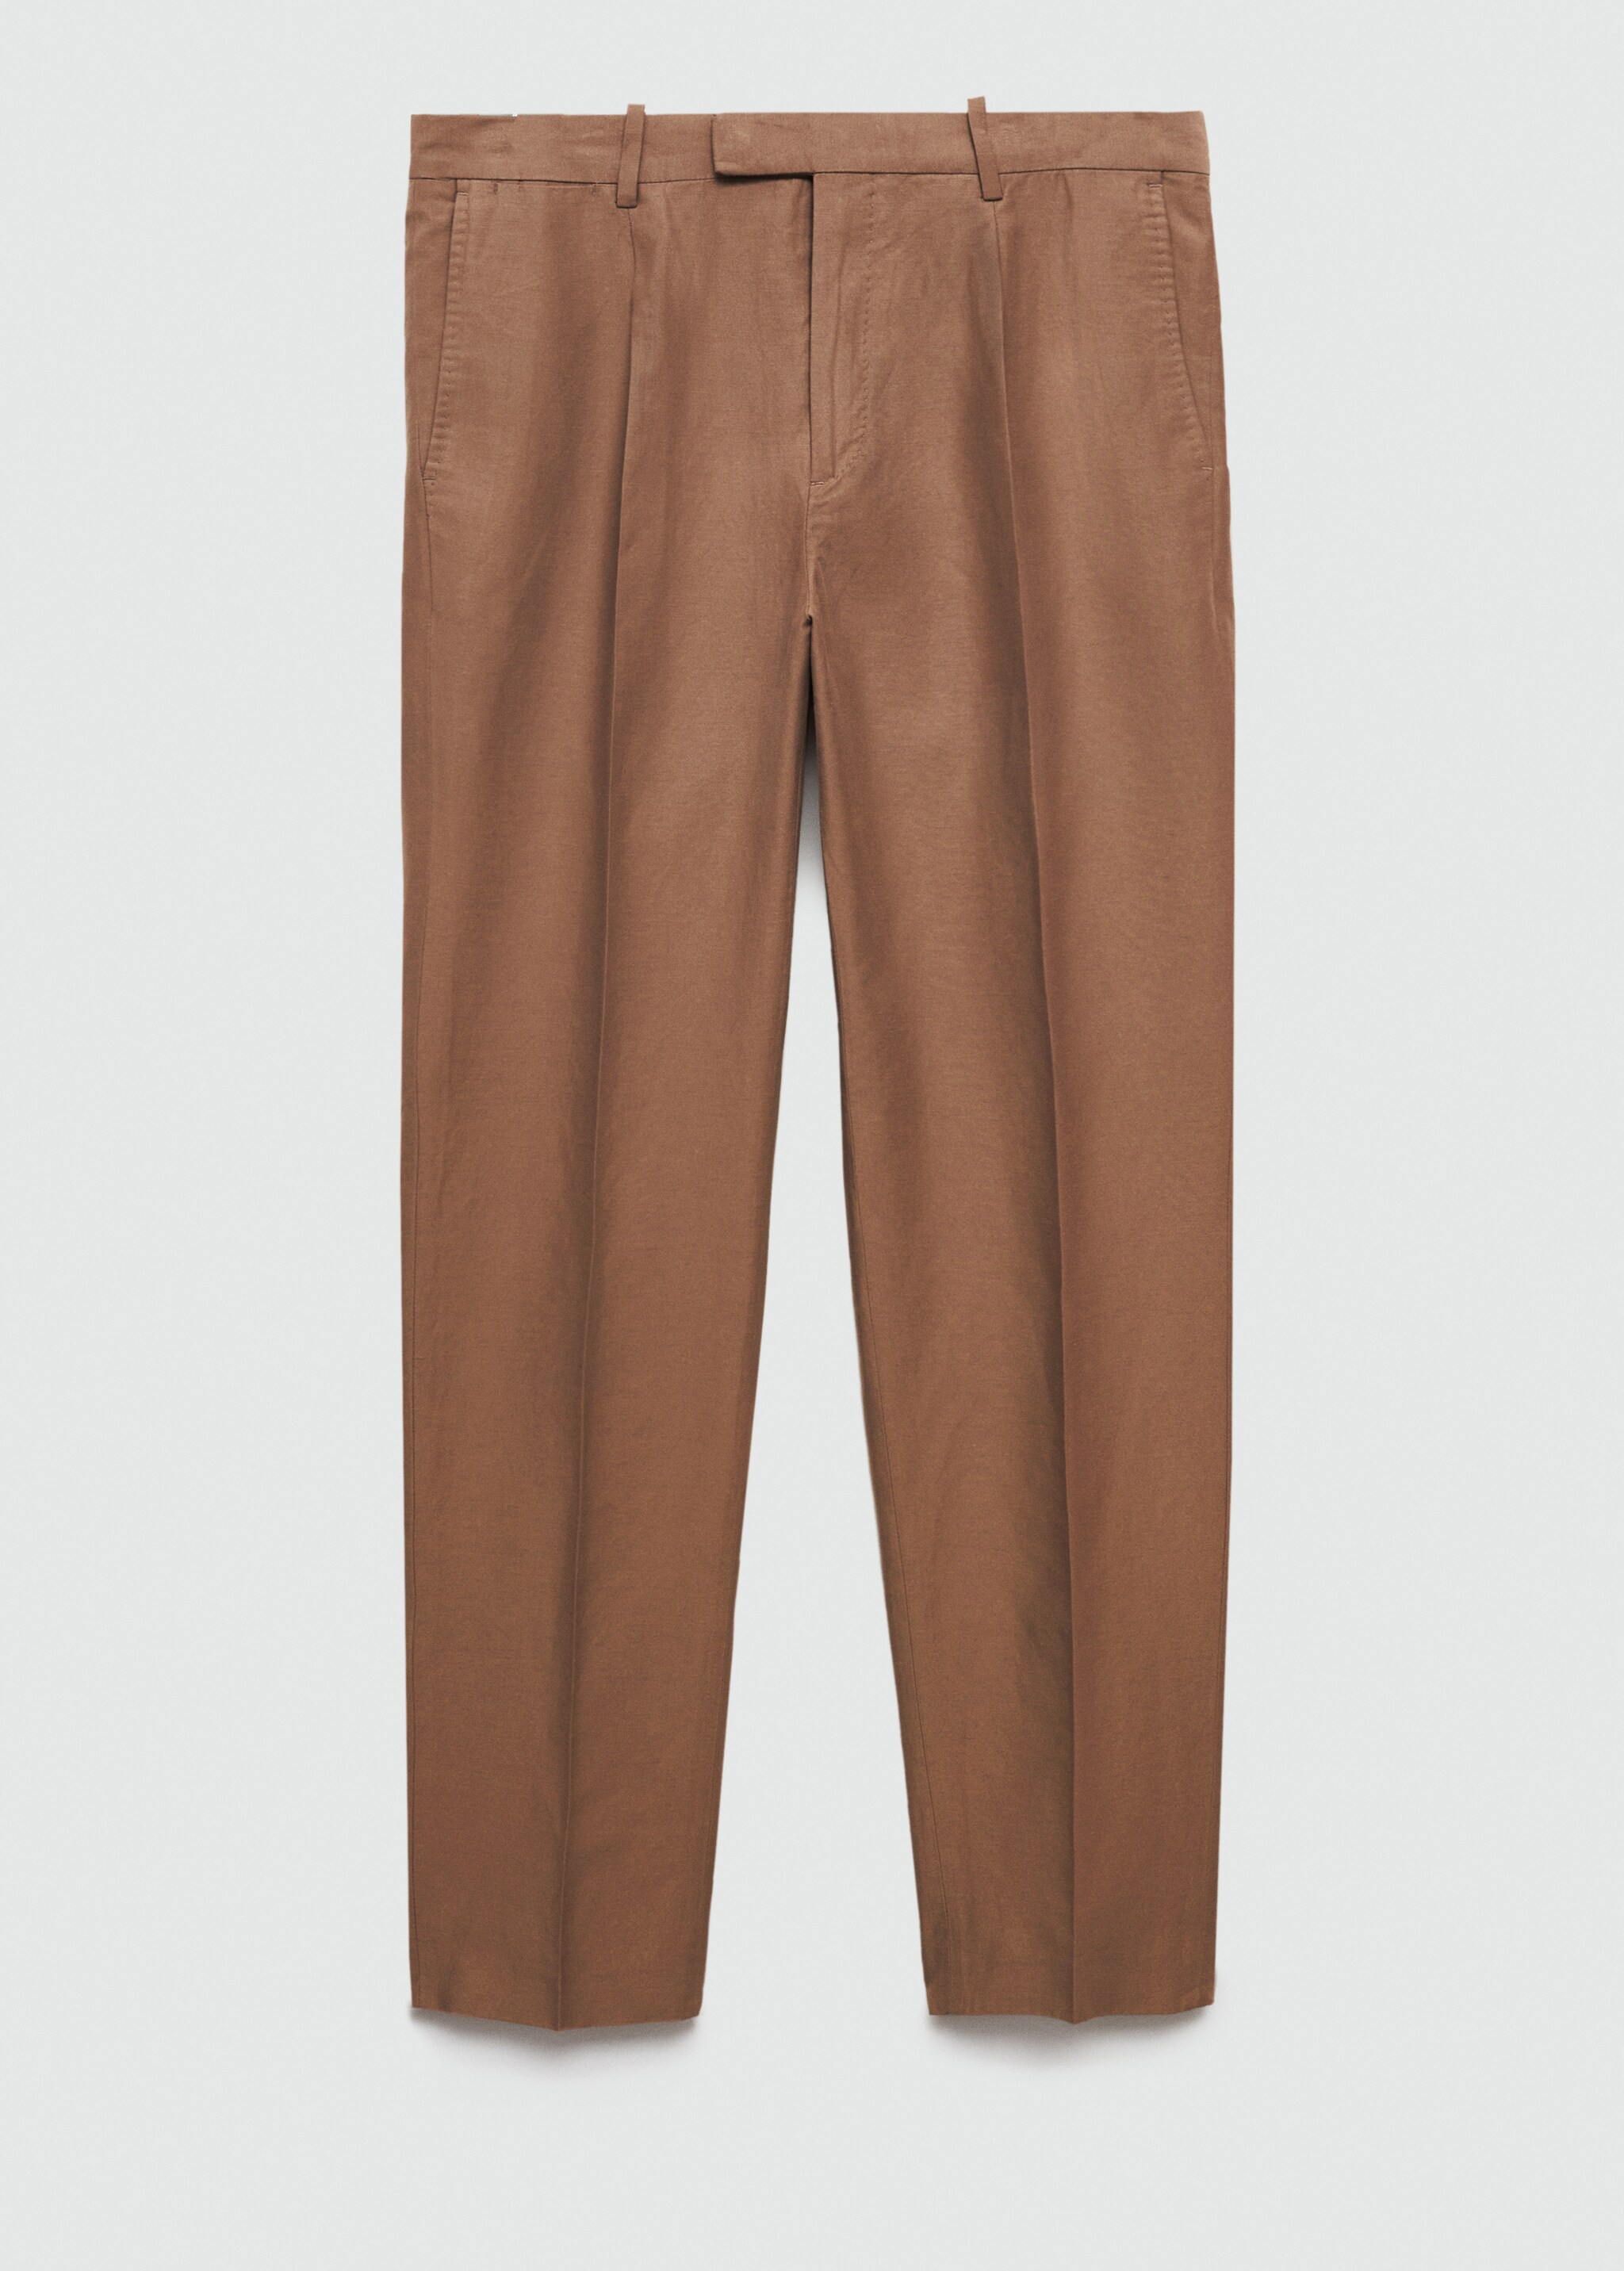 Pantalón traje slim fit algodón lino - Artículo sin modelo